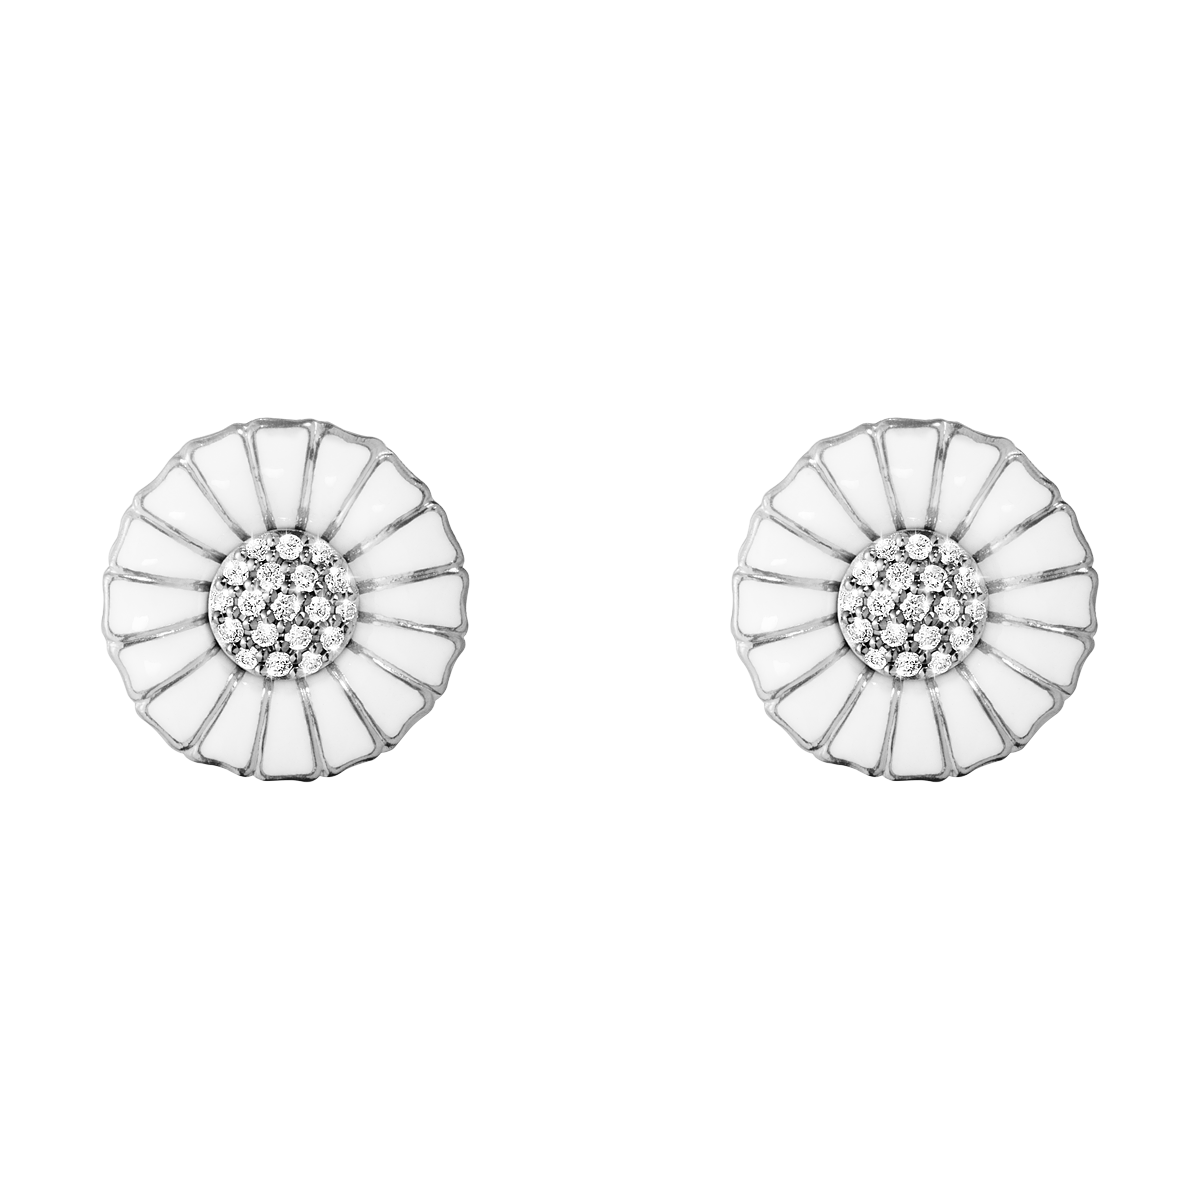 Daisy øreringe med diamanter - sølv fra Georg Jensen